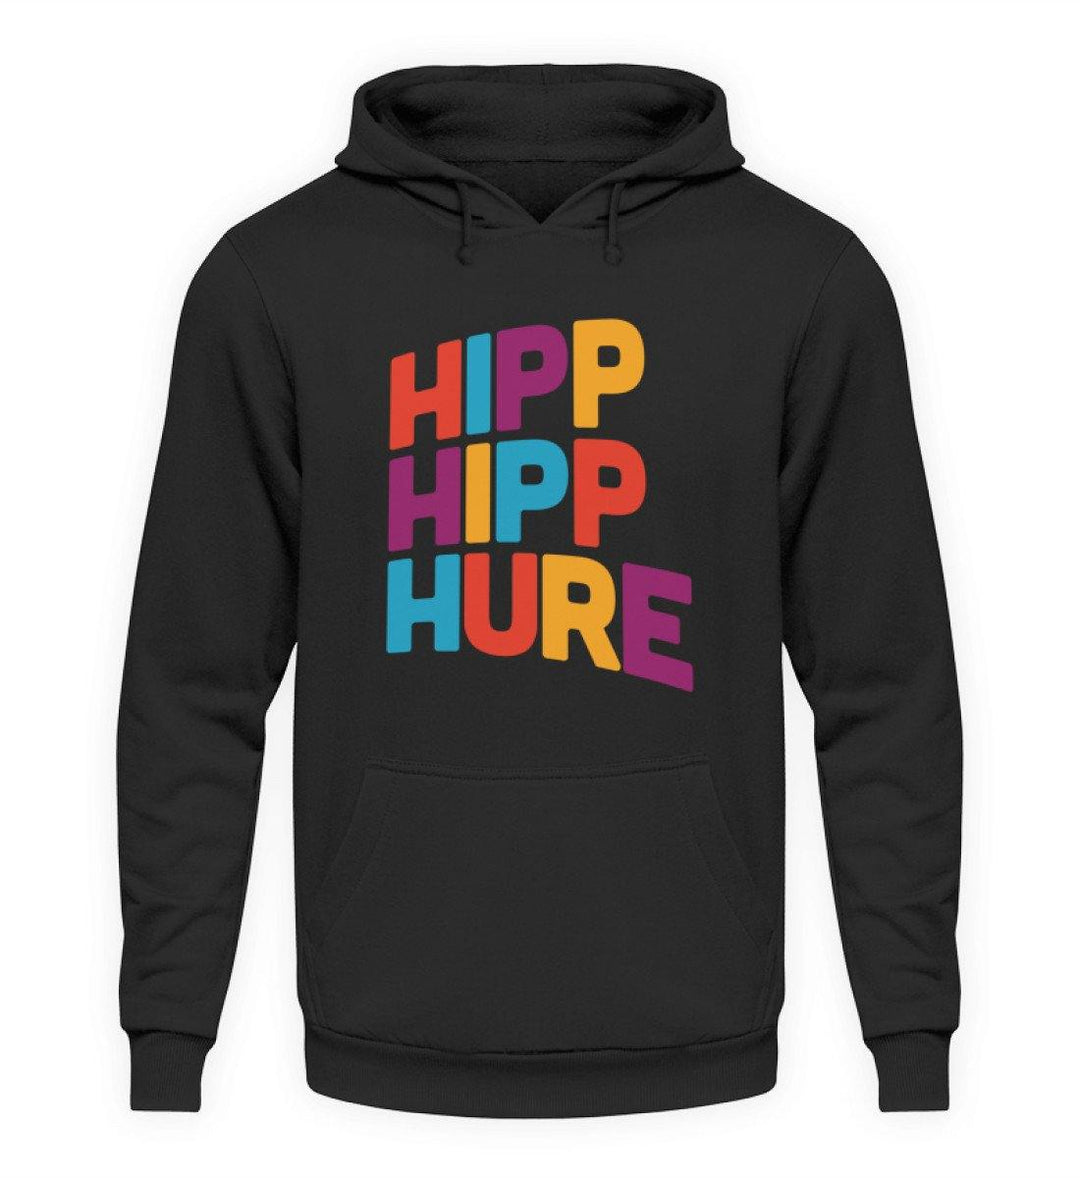 HIPP HIPP HURE- WORDS ON SHIRTS  - Unisex Kapuzenpullover Hoodie - Words on Shirts Sag es mit dem Mittelfinger Shirts Hoodies Sweatshirt Taschen Gymsack Spruch Sprüche Statement